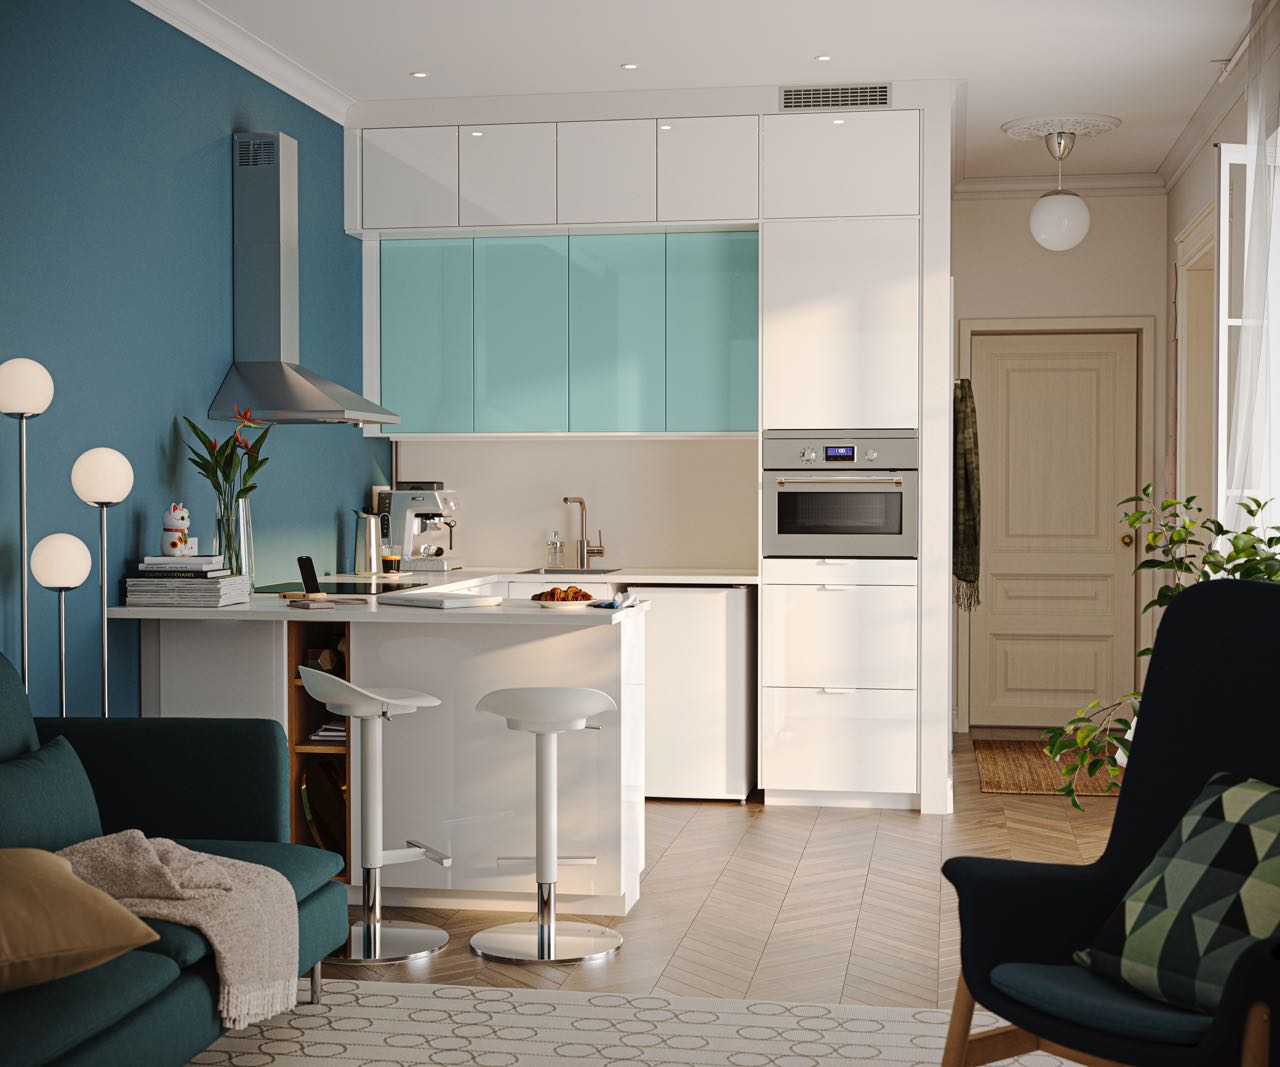 Weiß trifft auf Farbe. Das Türkis der Fronten und der Wand verleiht der Küche eine individuelle Note und wirkt trotzdem dezent. Alles von Ikea. Foto: Inter IKEA Systems B.V. 2022